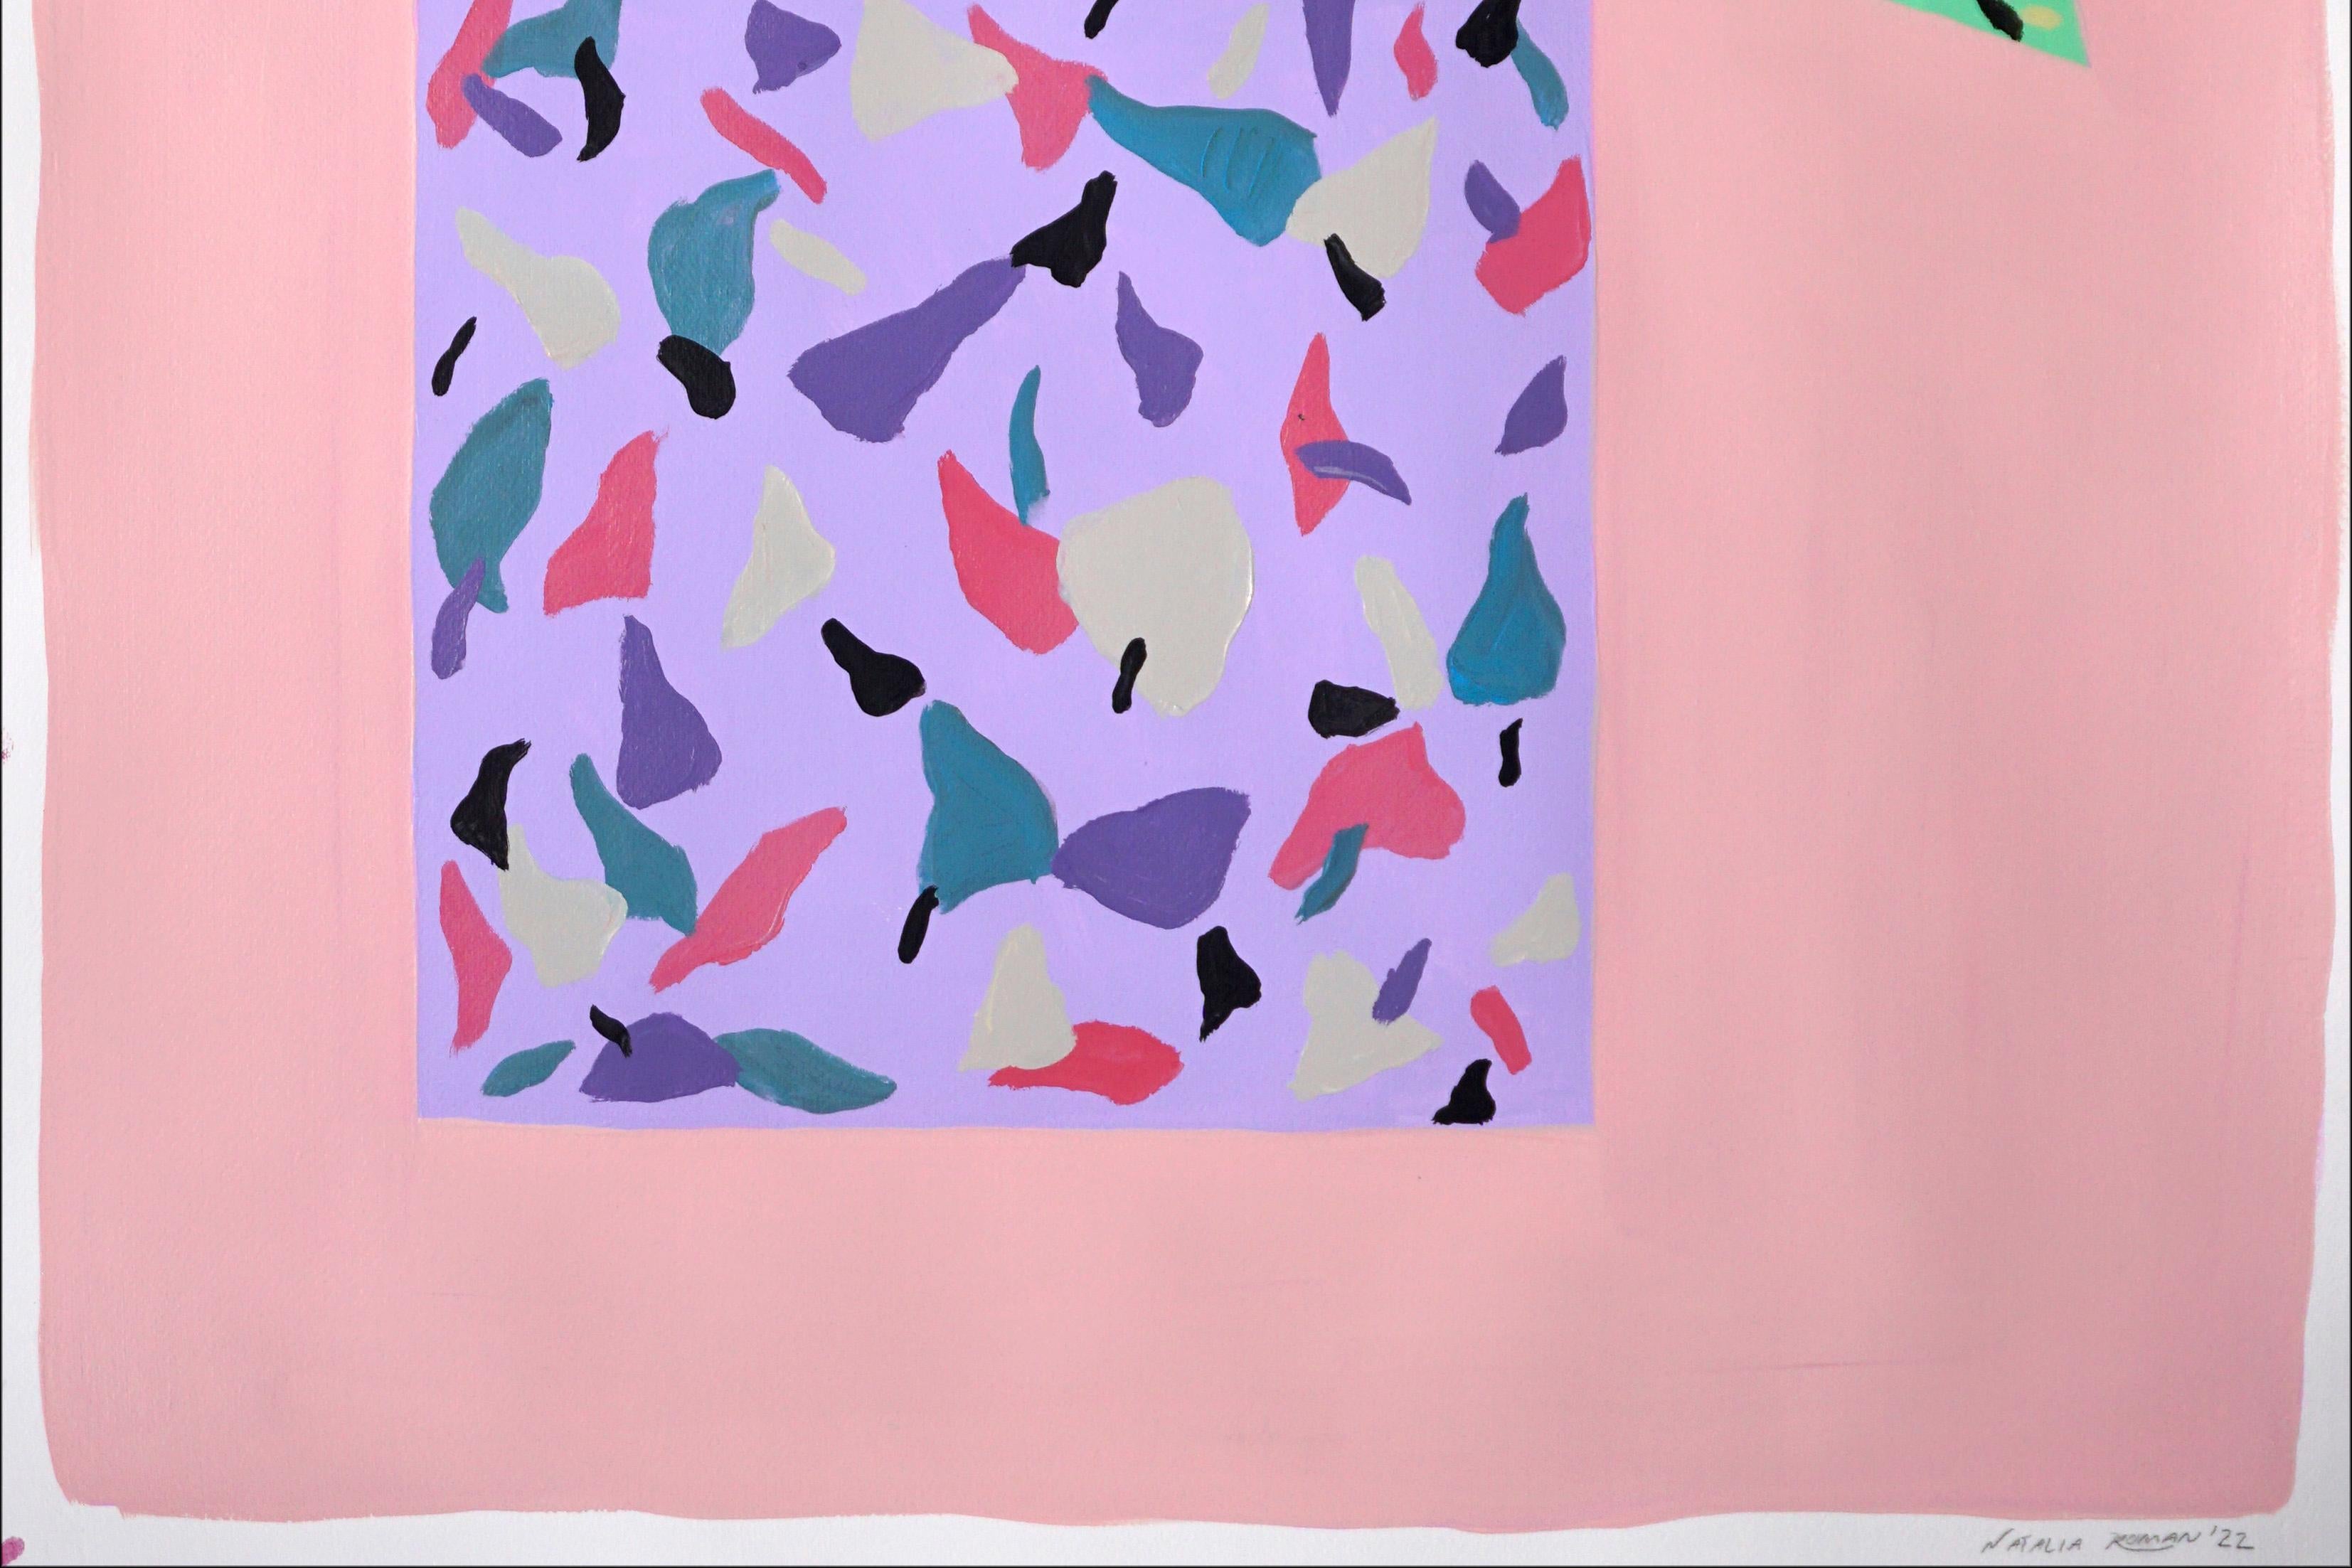 Cette série de peintures acryliques peintes à la main par Natalia Roman s'inspire des couleurs et des textures du carrelage de terrazzo italien. Les motifs créés combinent une variété de couleurs vives au premier plan avec de subtils tons de fond,